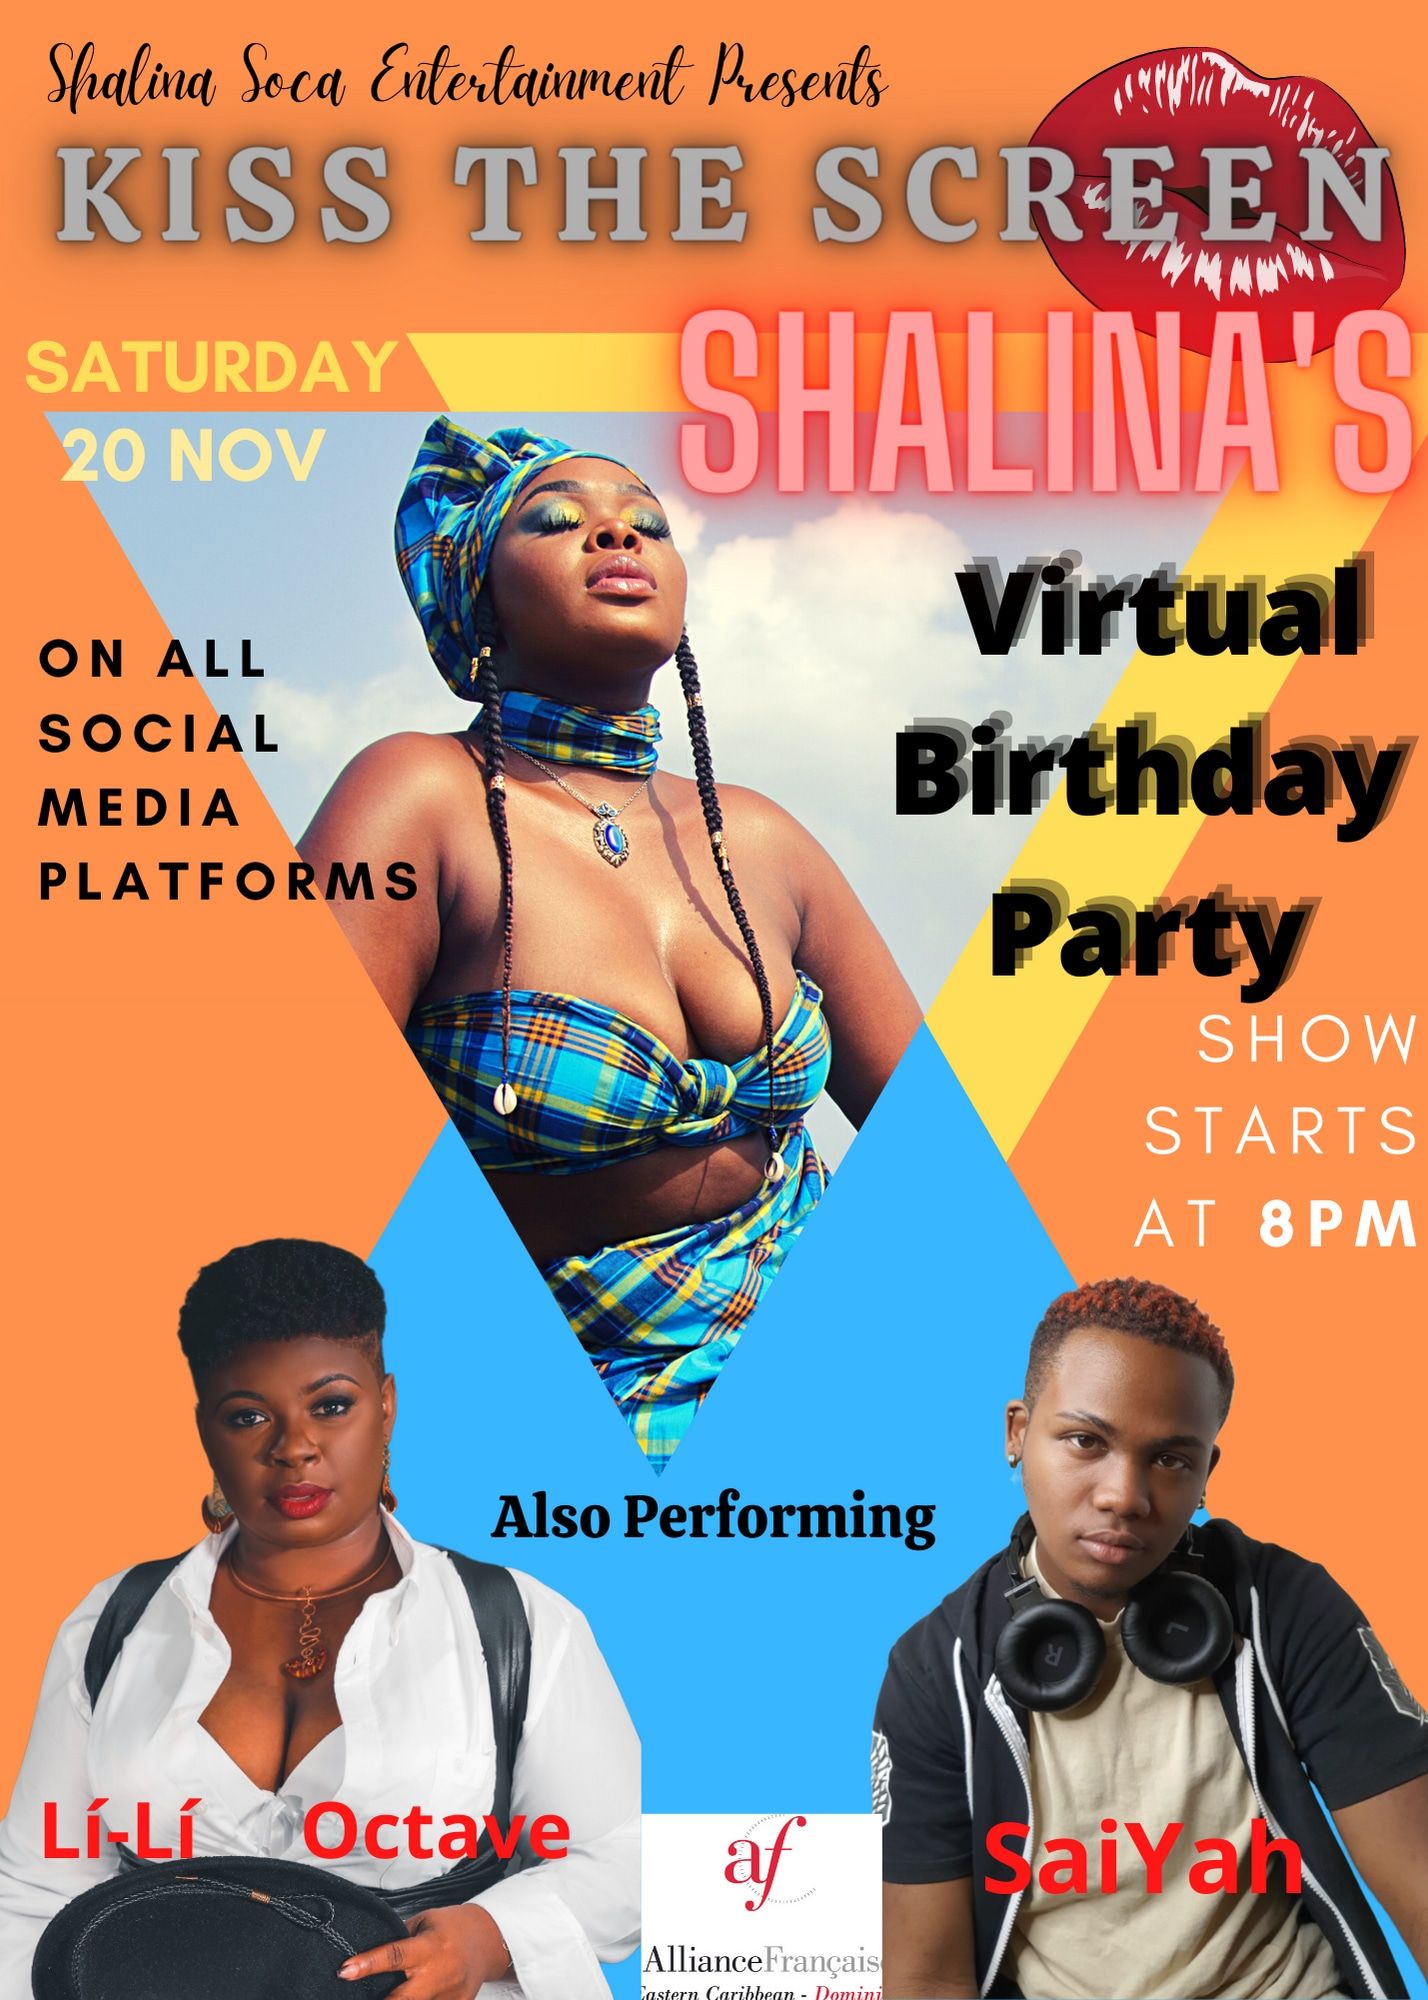 Shalina Soca Entertainment presents Kiss The Screen - Shalina's Virtual Birthday Party